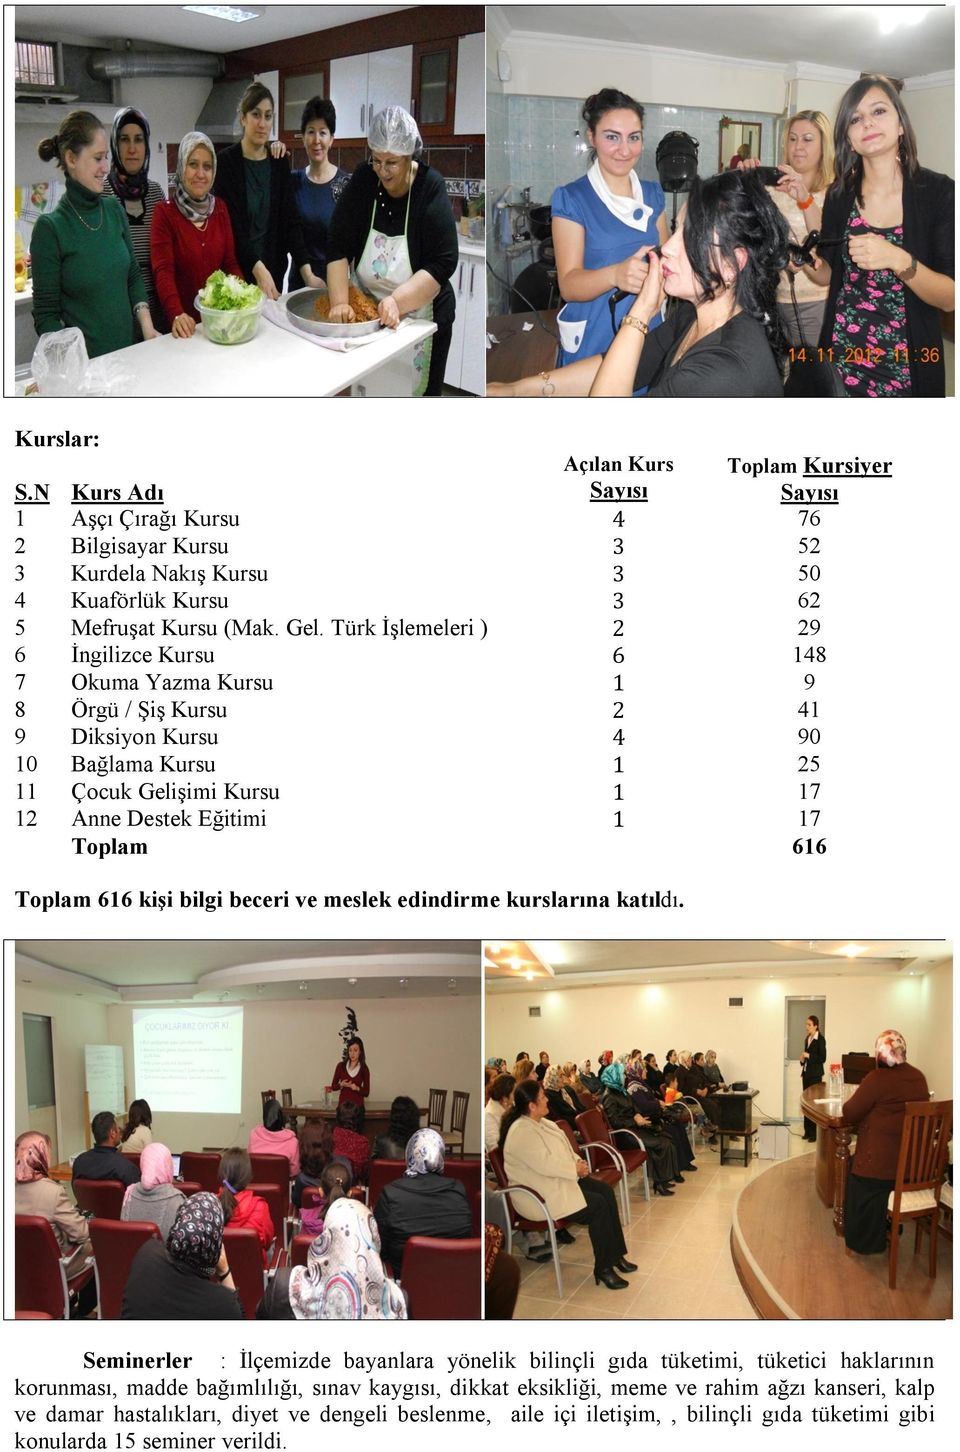 17 Toplam 616 Toplam 616 kişi bilgi beceri ve meslek edindirme kurslarına katıldı.